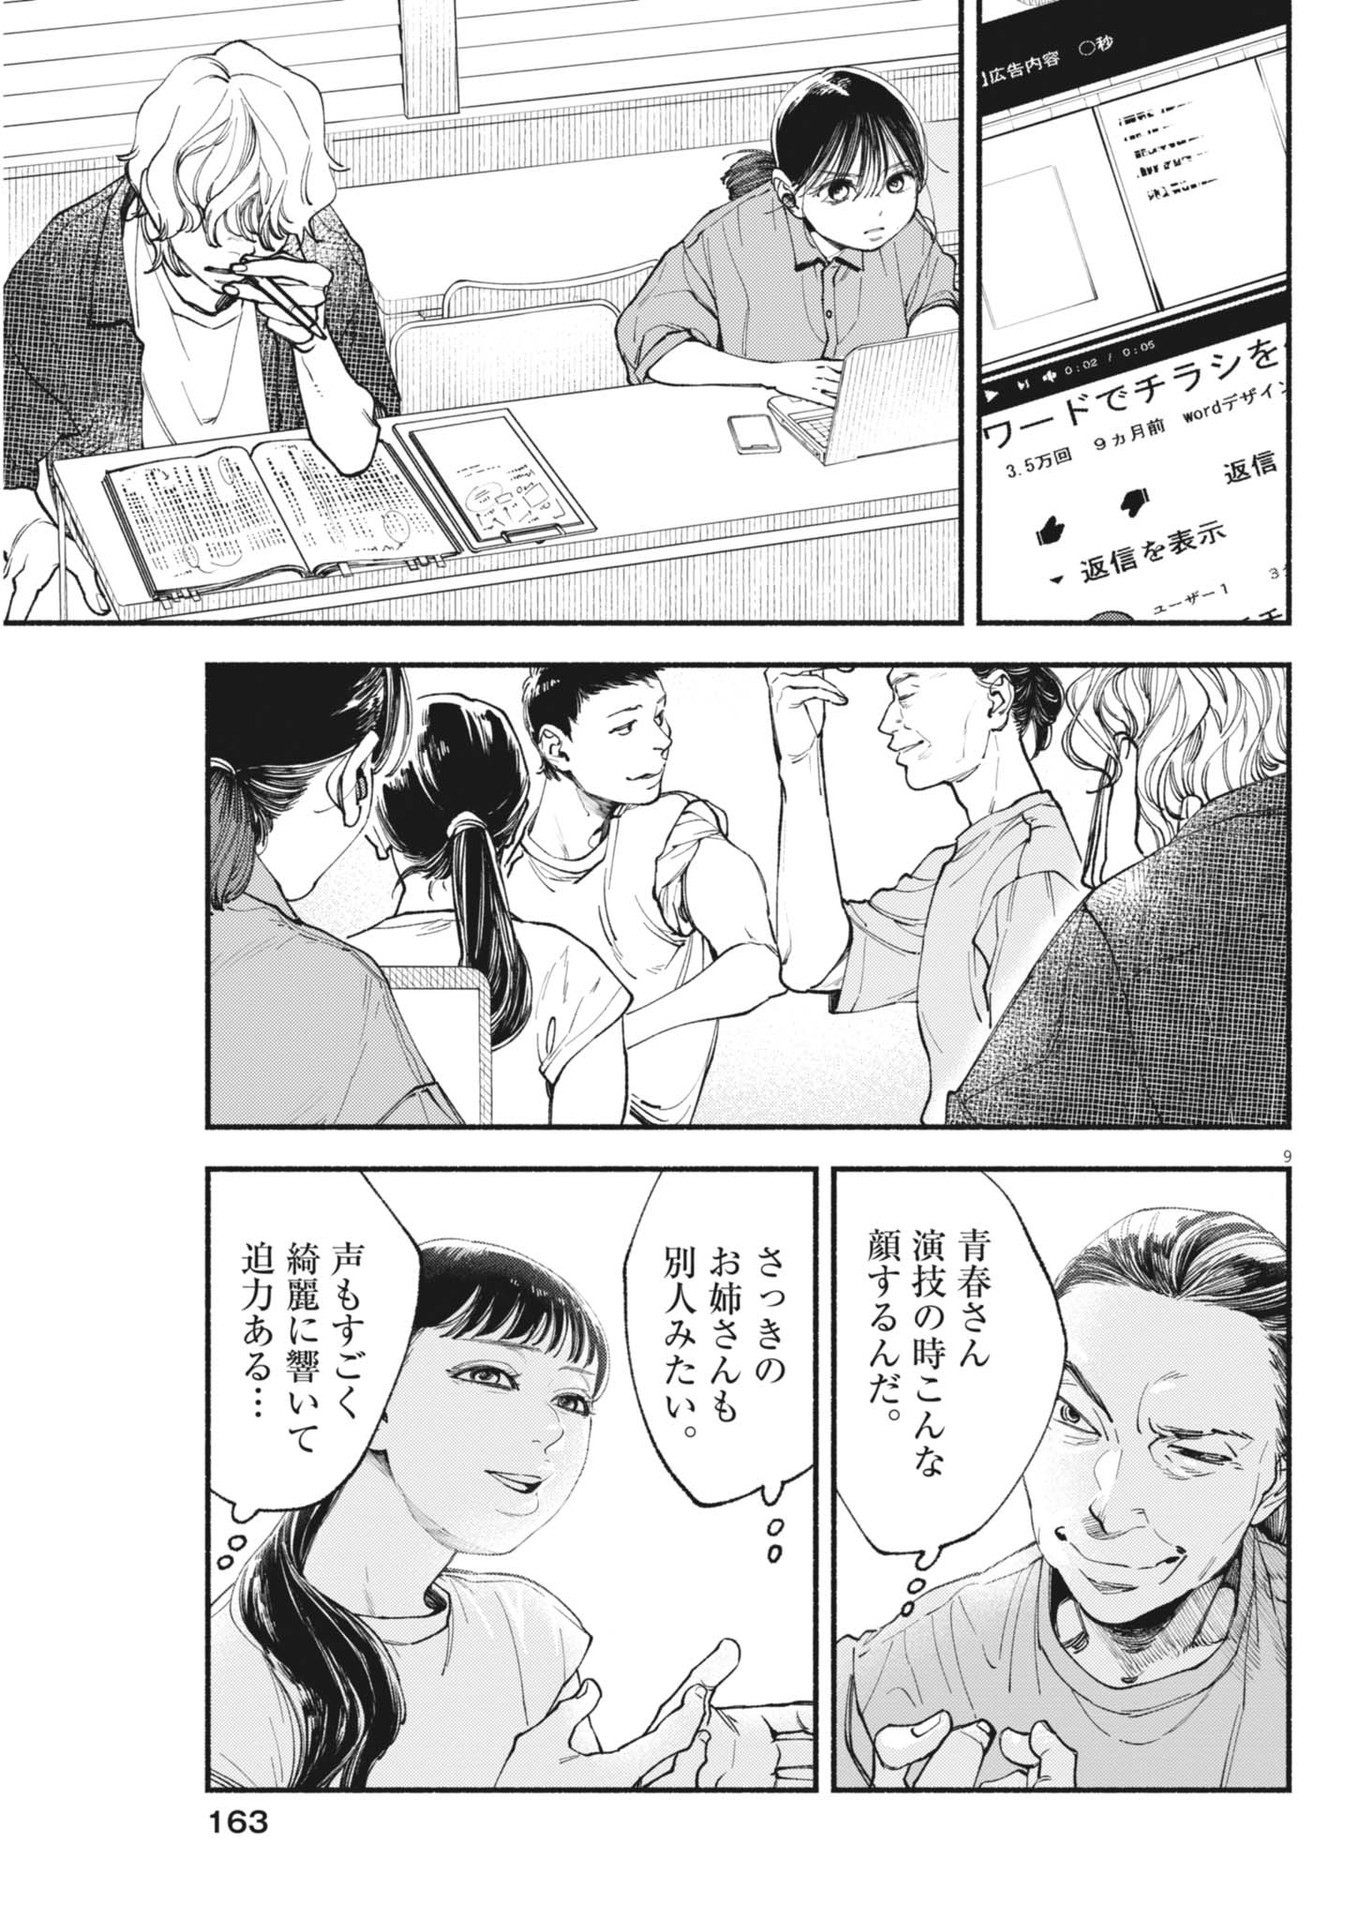 Konoyo wa Tatakau Kachi ga Aru  - Chapter 28 - Page 9